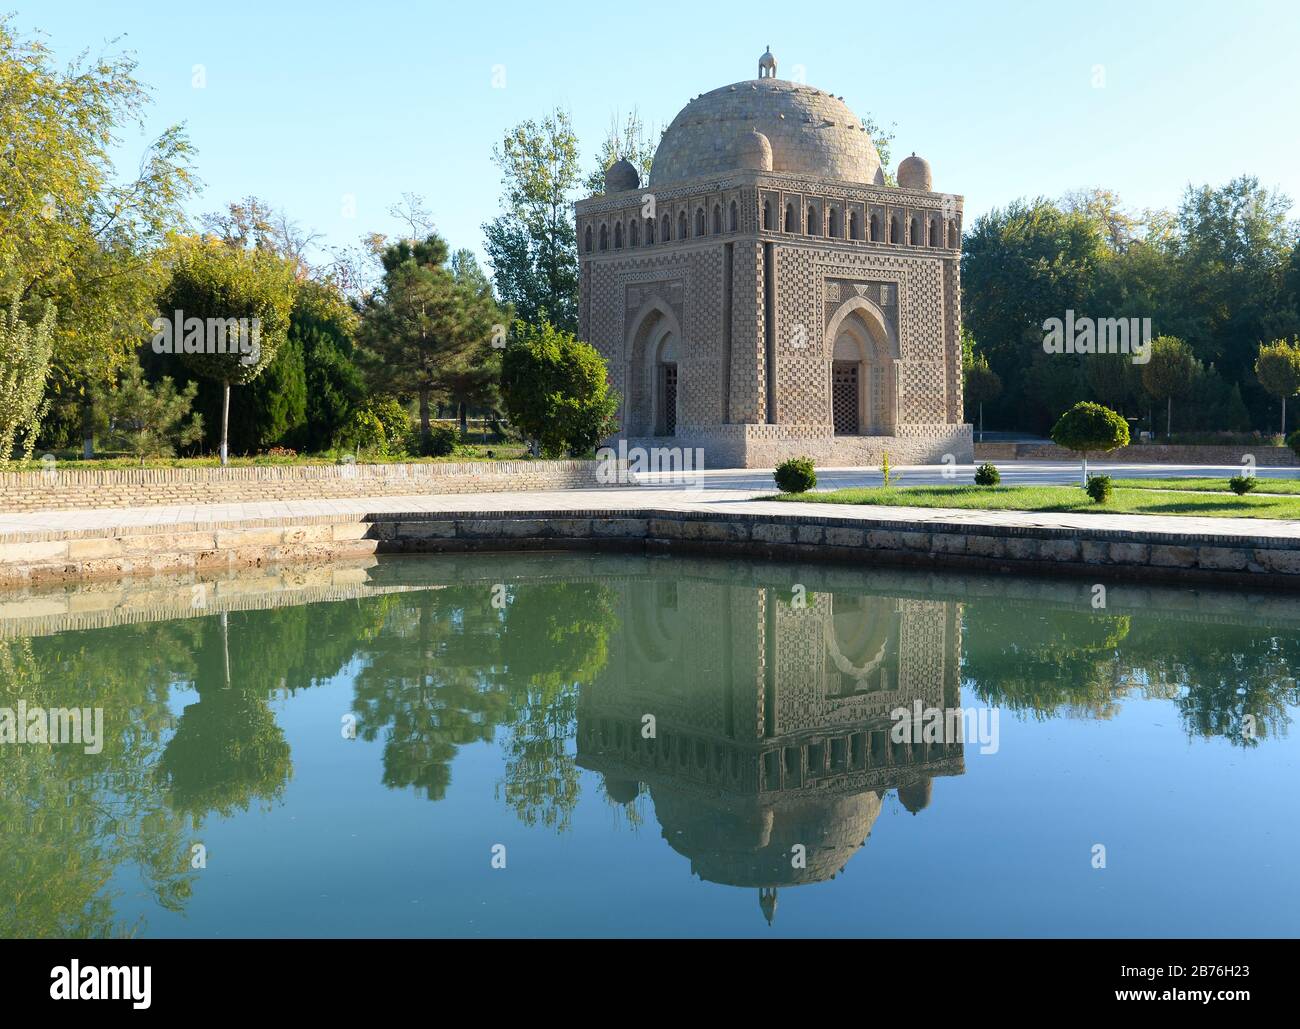 Mausoleo Samanid que se refleja en el agua en un parque con vegetación en Bujara, Uzbekistán. Ejemplo emblemático de la arquitectura islámica temprana en Asia. Foto de stock